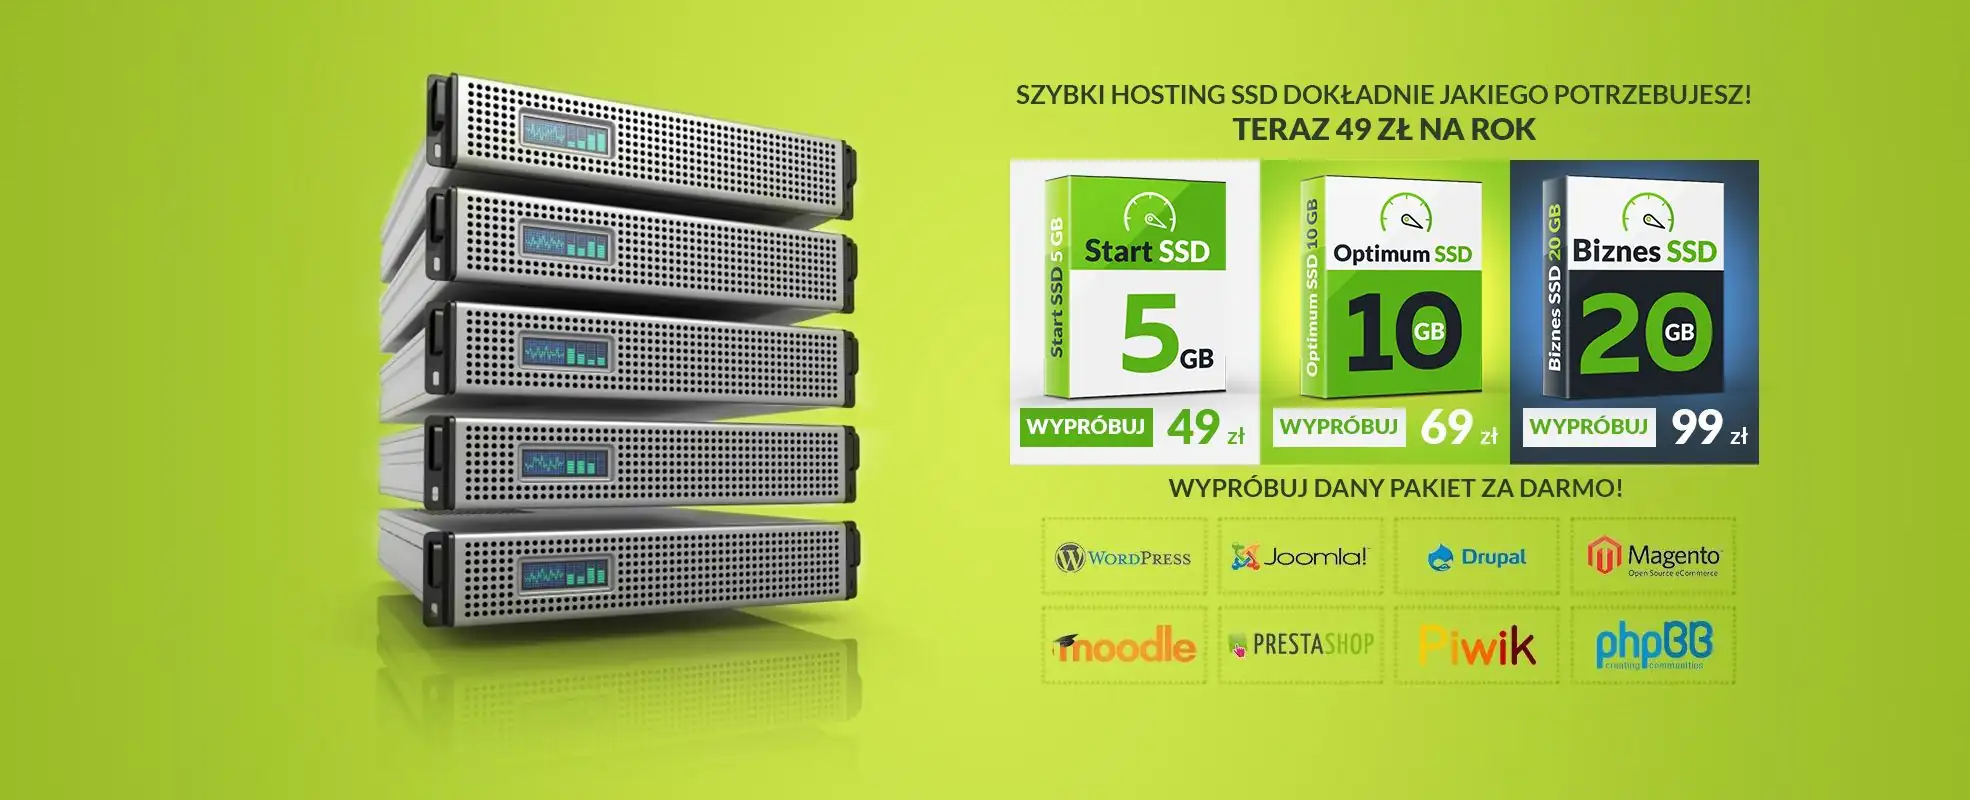 Zdjęcie oferty hostingu SSD w promocyjnej cenie od 59zł brutto i link do specyfikacji i zamówienia hostingu SSD